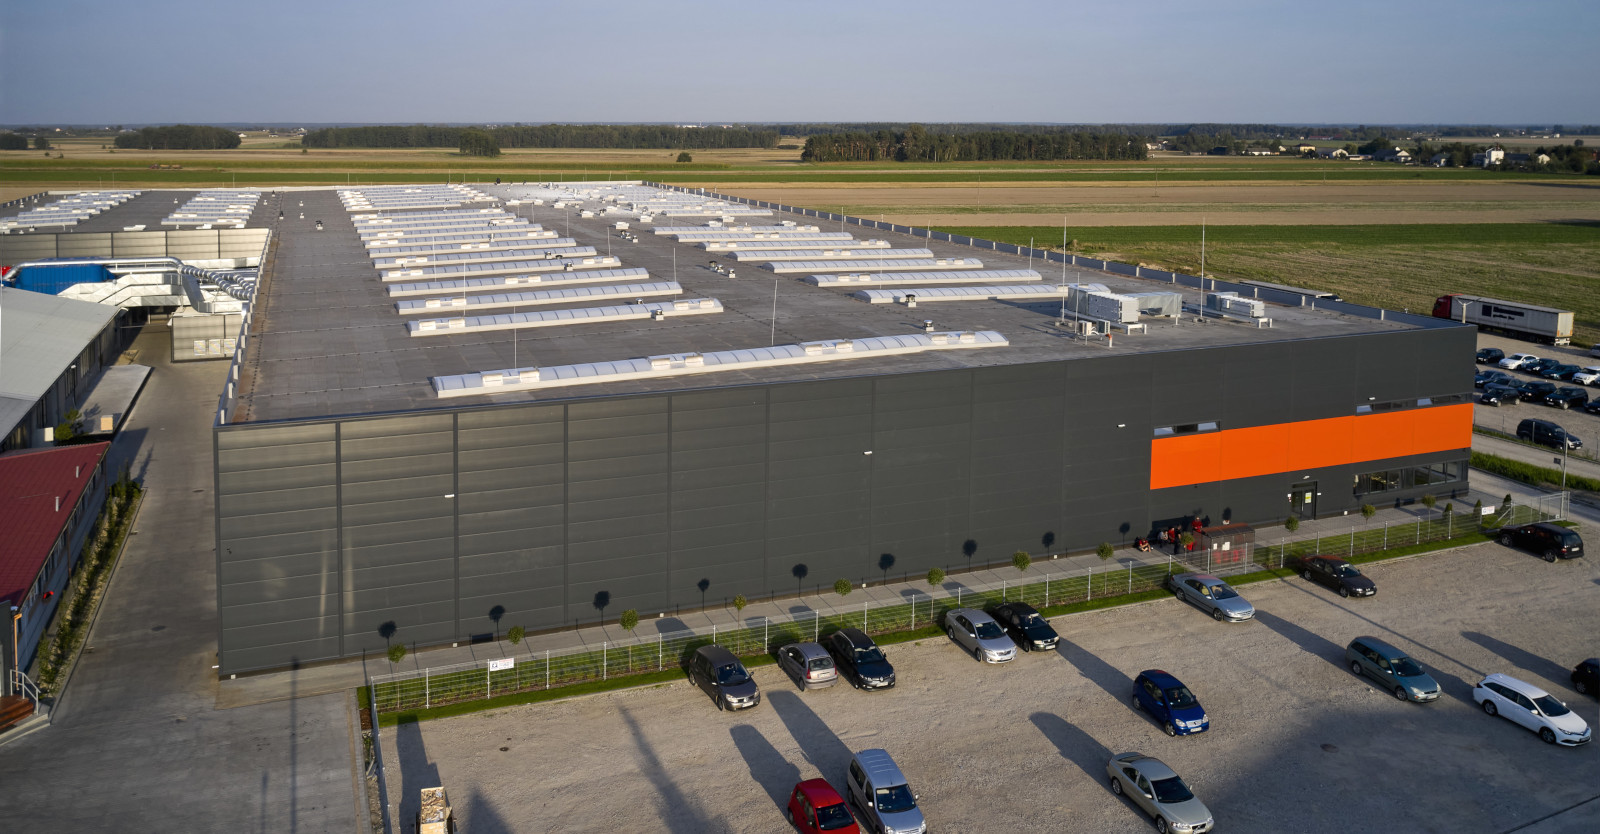 hala produkcyjno-magazynowa, widok z góry - hala o powierzchni 20.000 m2, dla Mardom Pro, generalne wykonawstwo CoBouw Polska